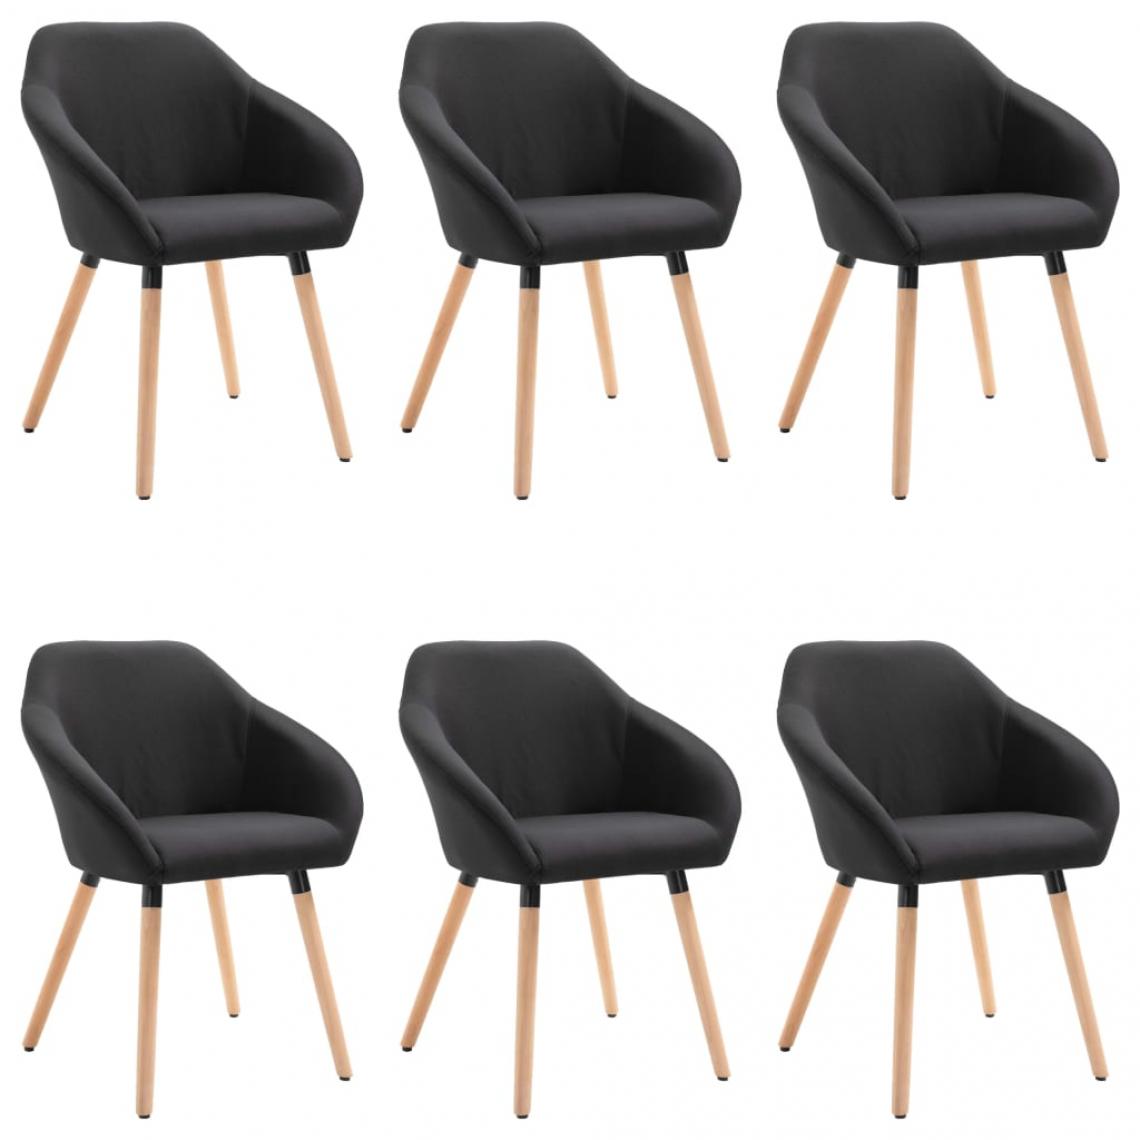 Decoshop26 - Lot de 6 chaises de salle à manger cuisine design moderne tissu noir CDS022717 - Chaises